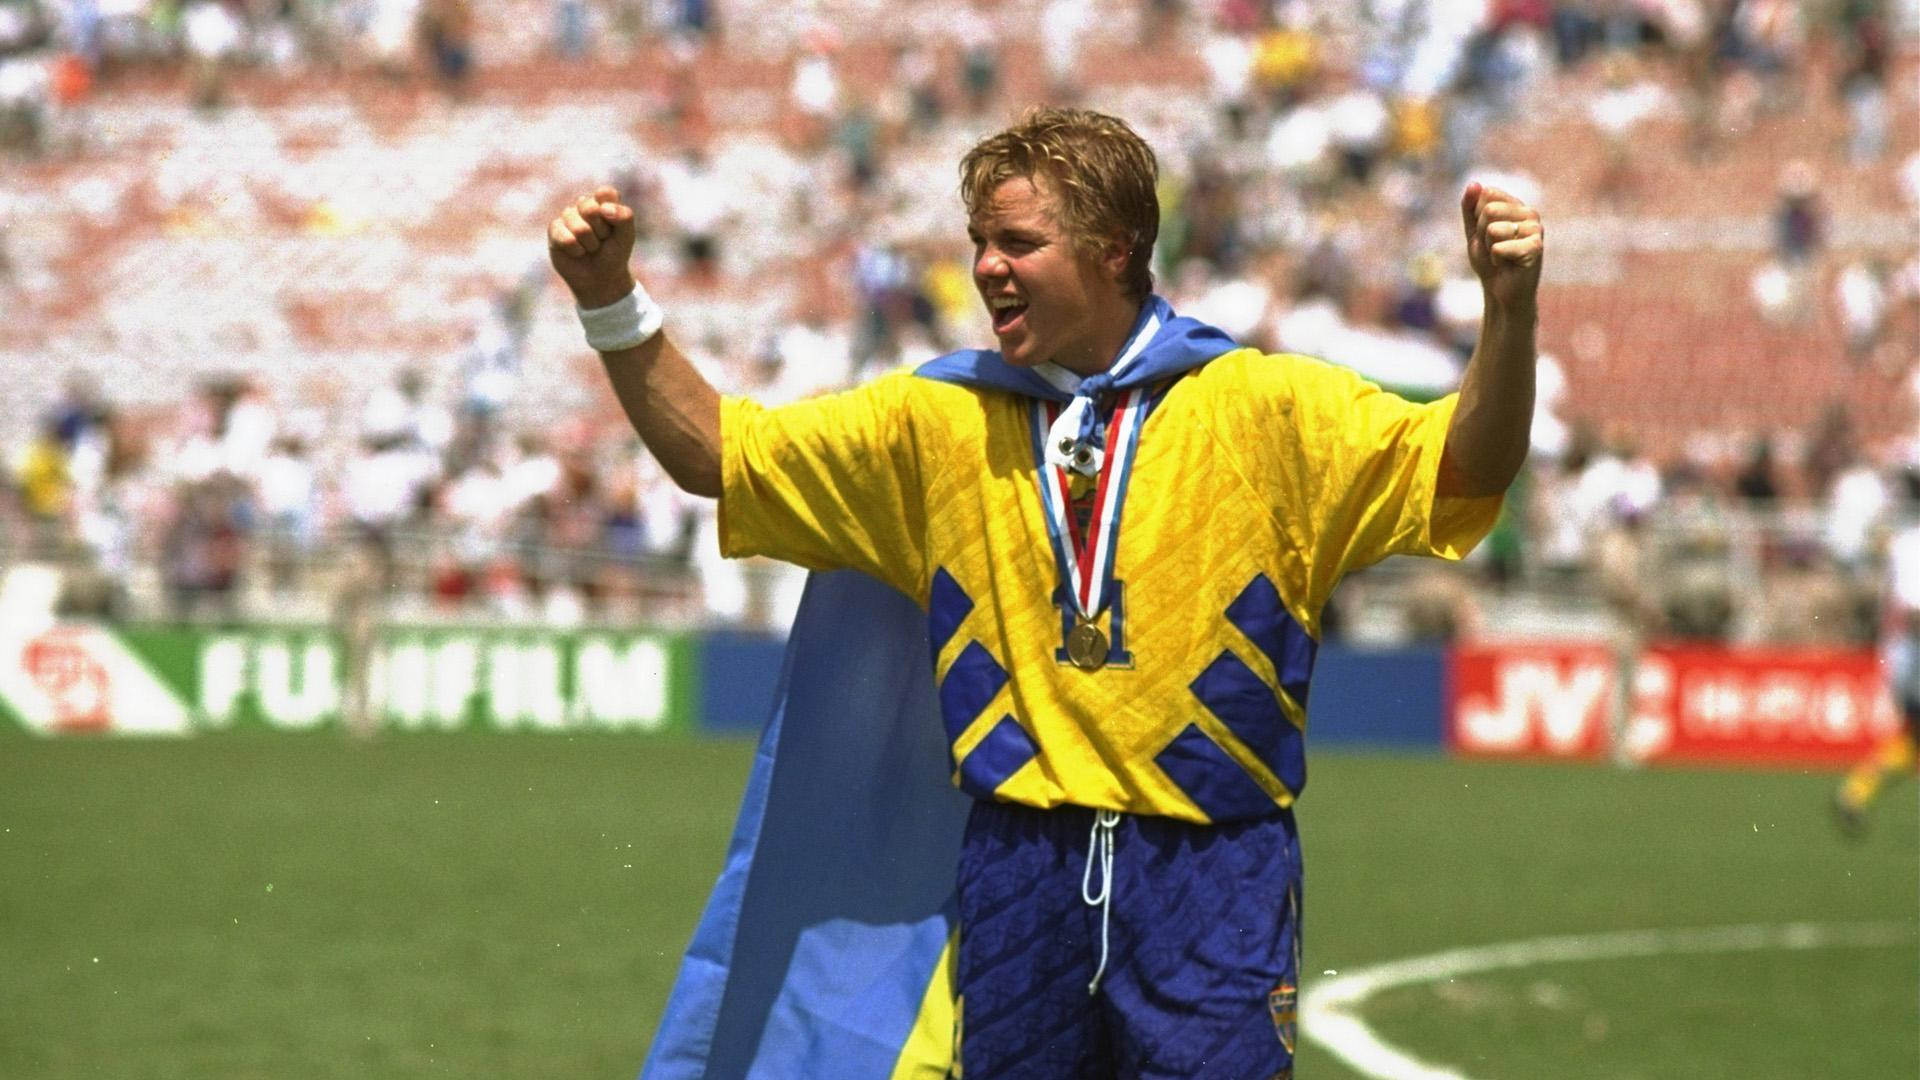 tomas-brolin-sweden-world-cup-1994_1oeiliuec0kol1f5rr5tzykupj.jpg